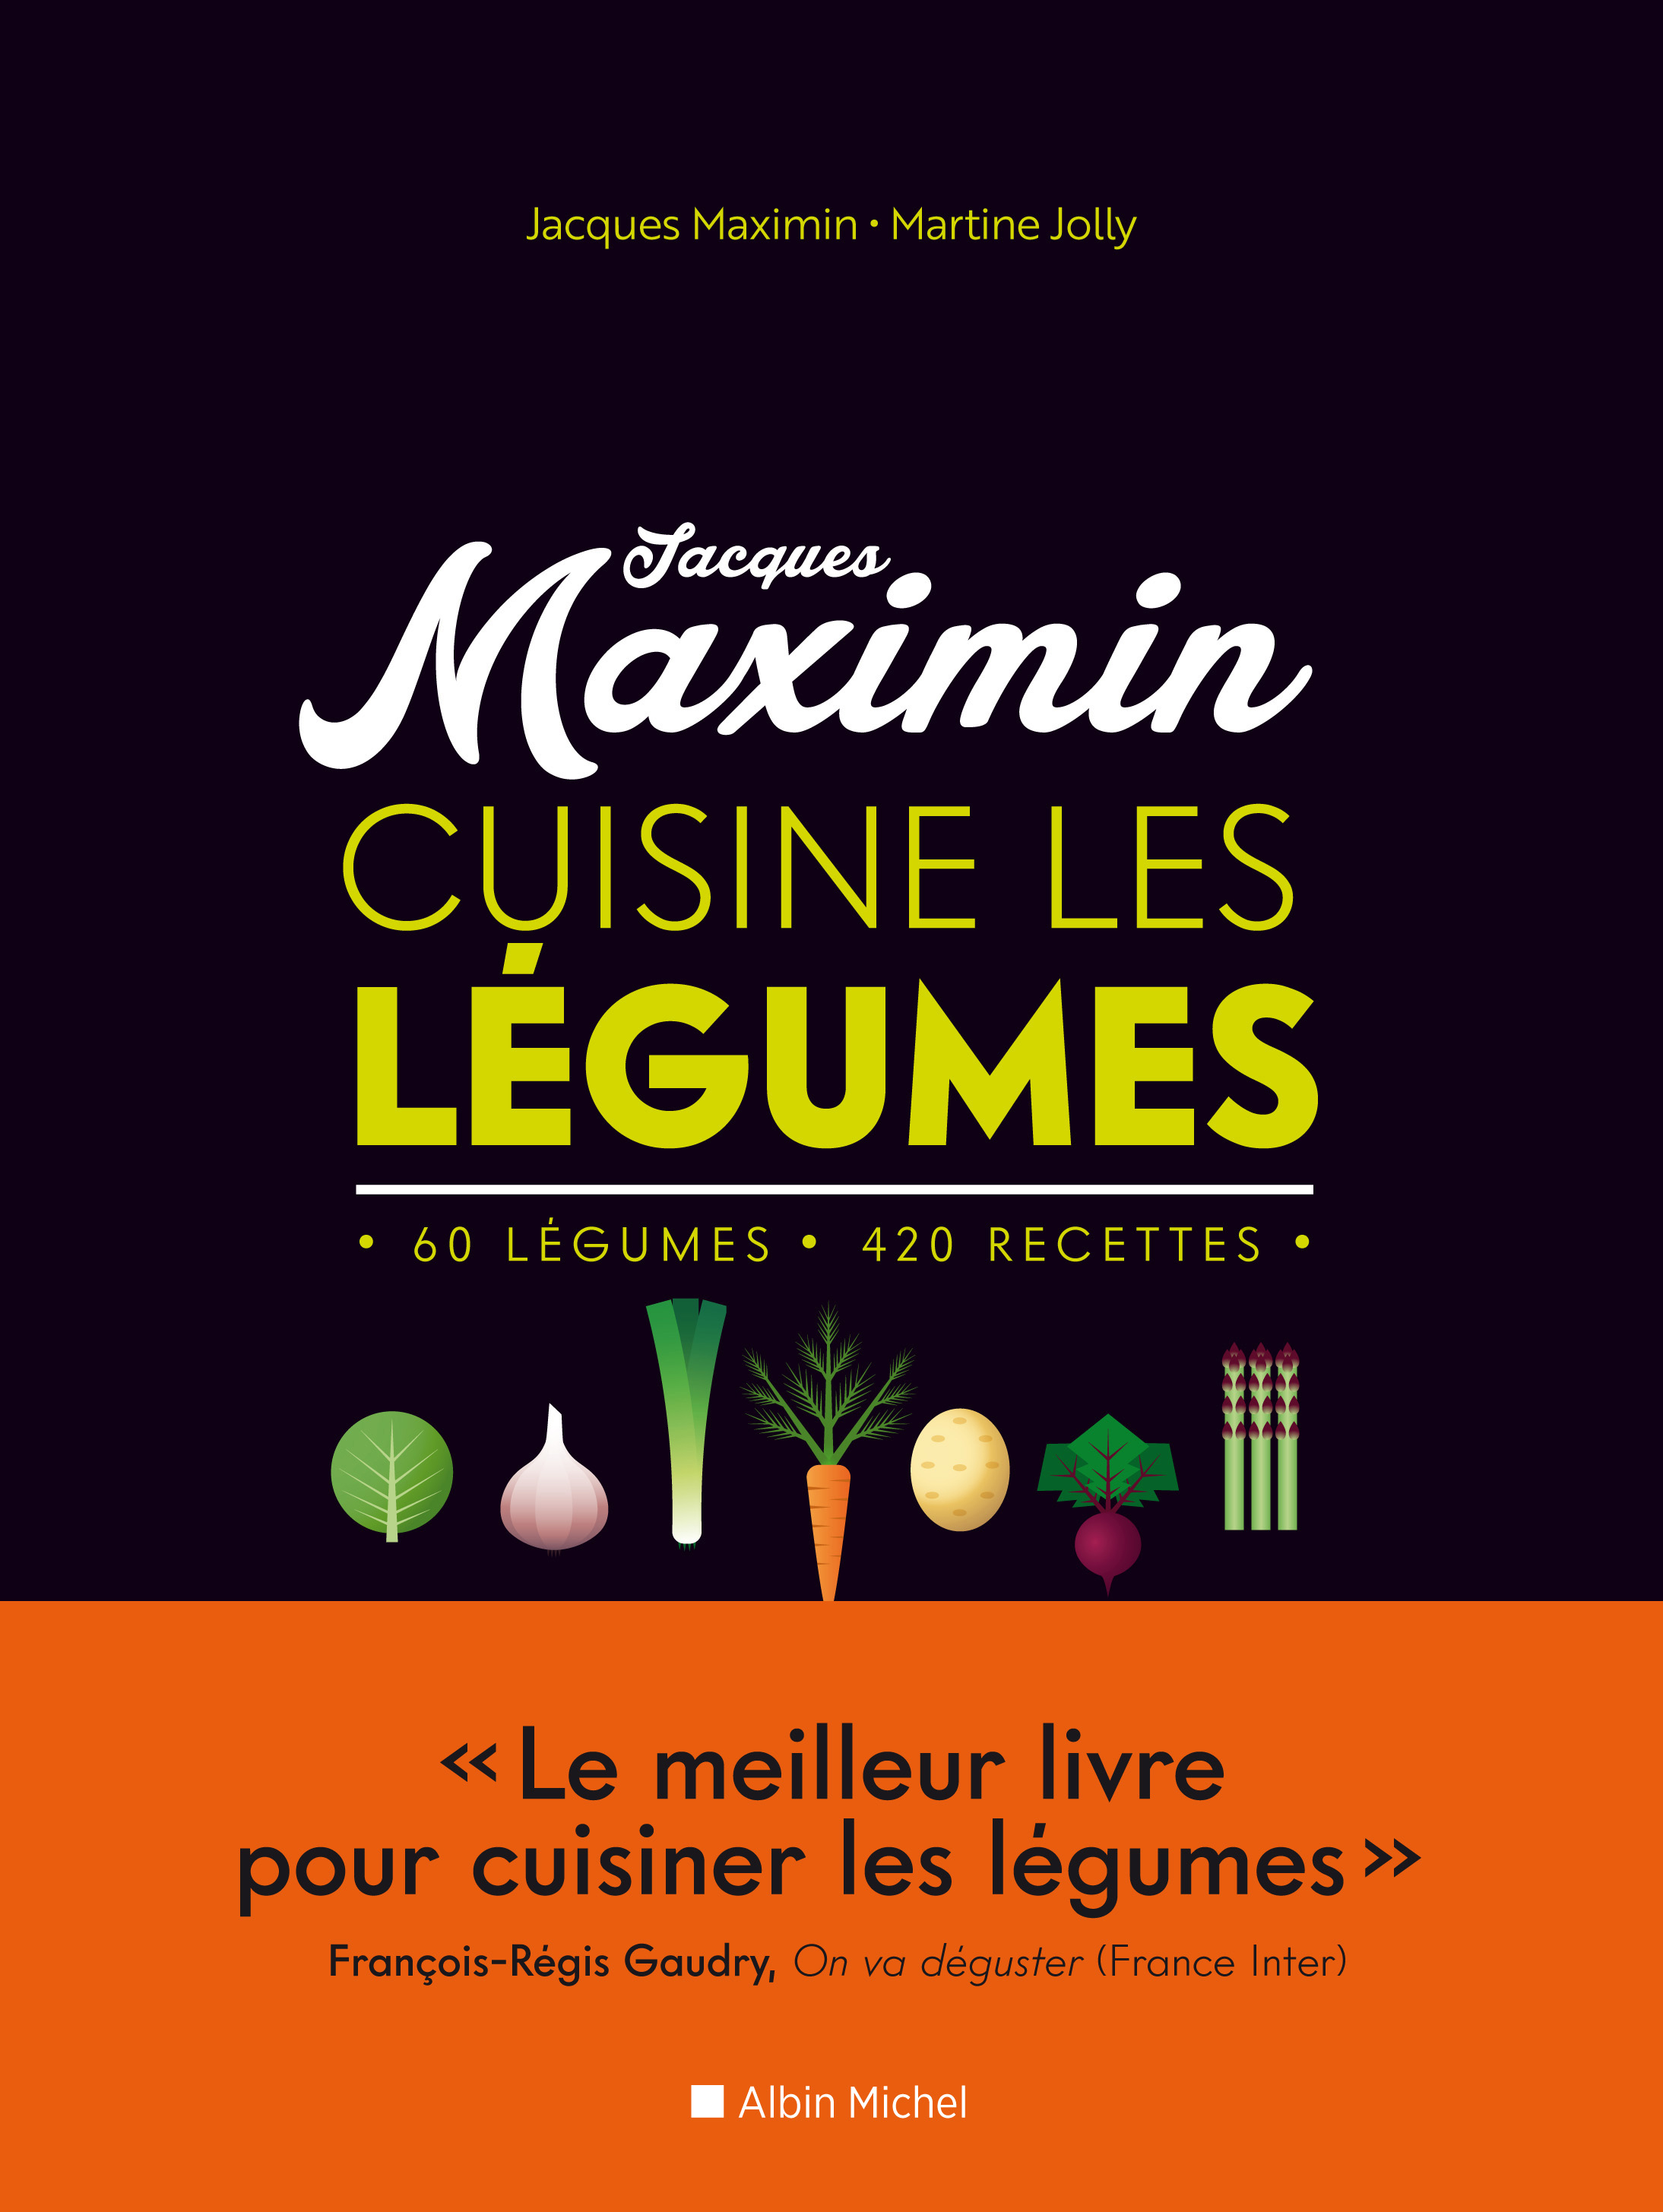 Couverture du livre Jacques Maximin cuisine les légumes